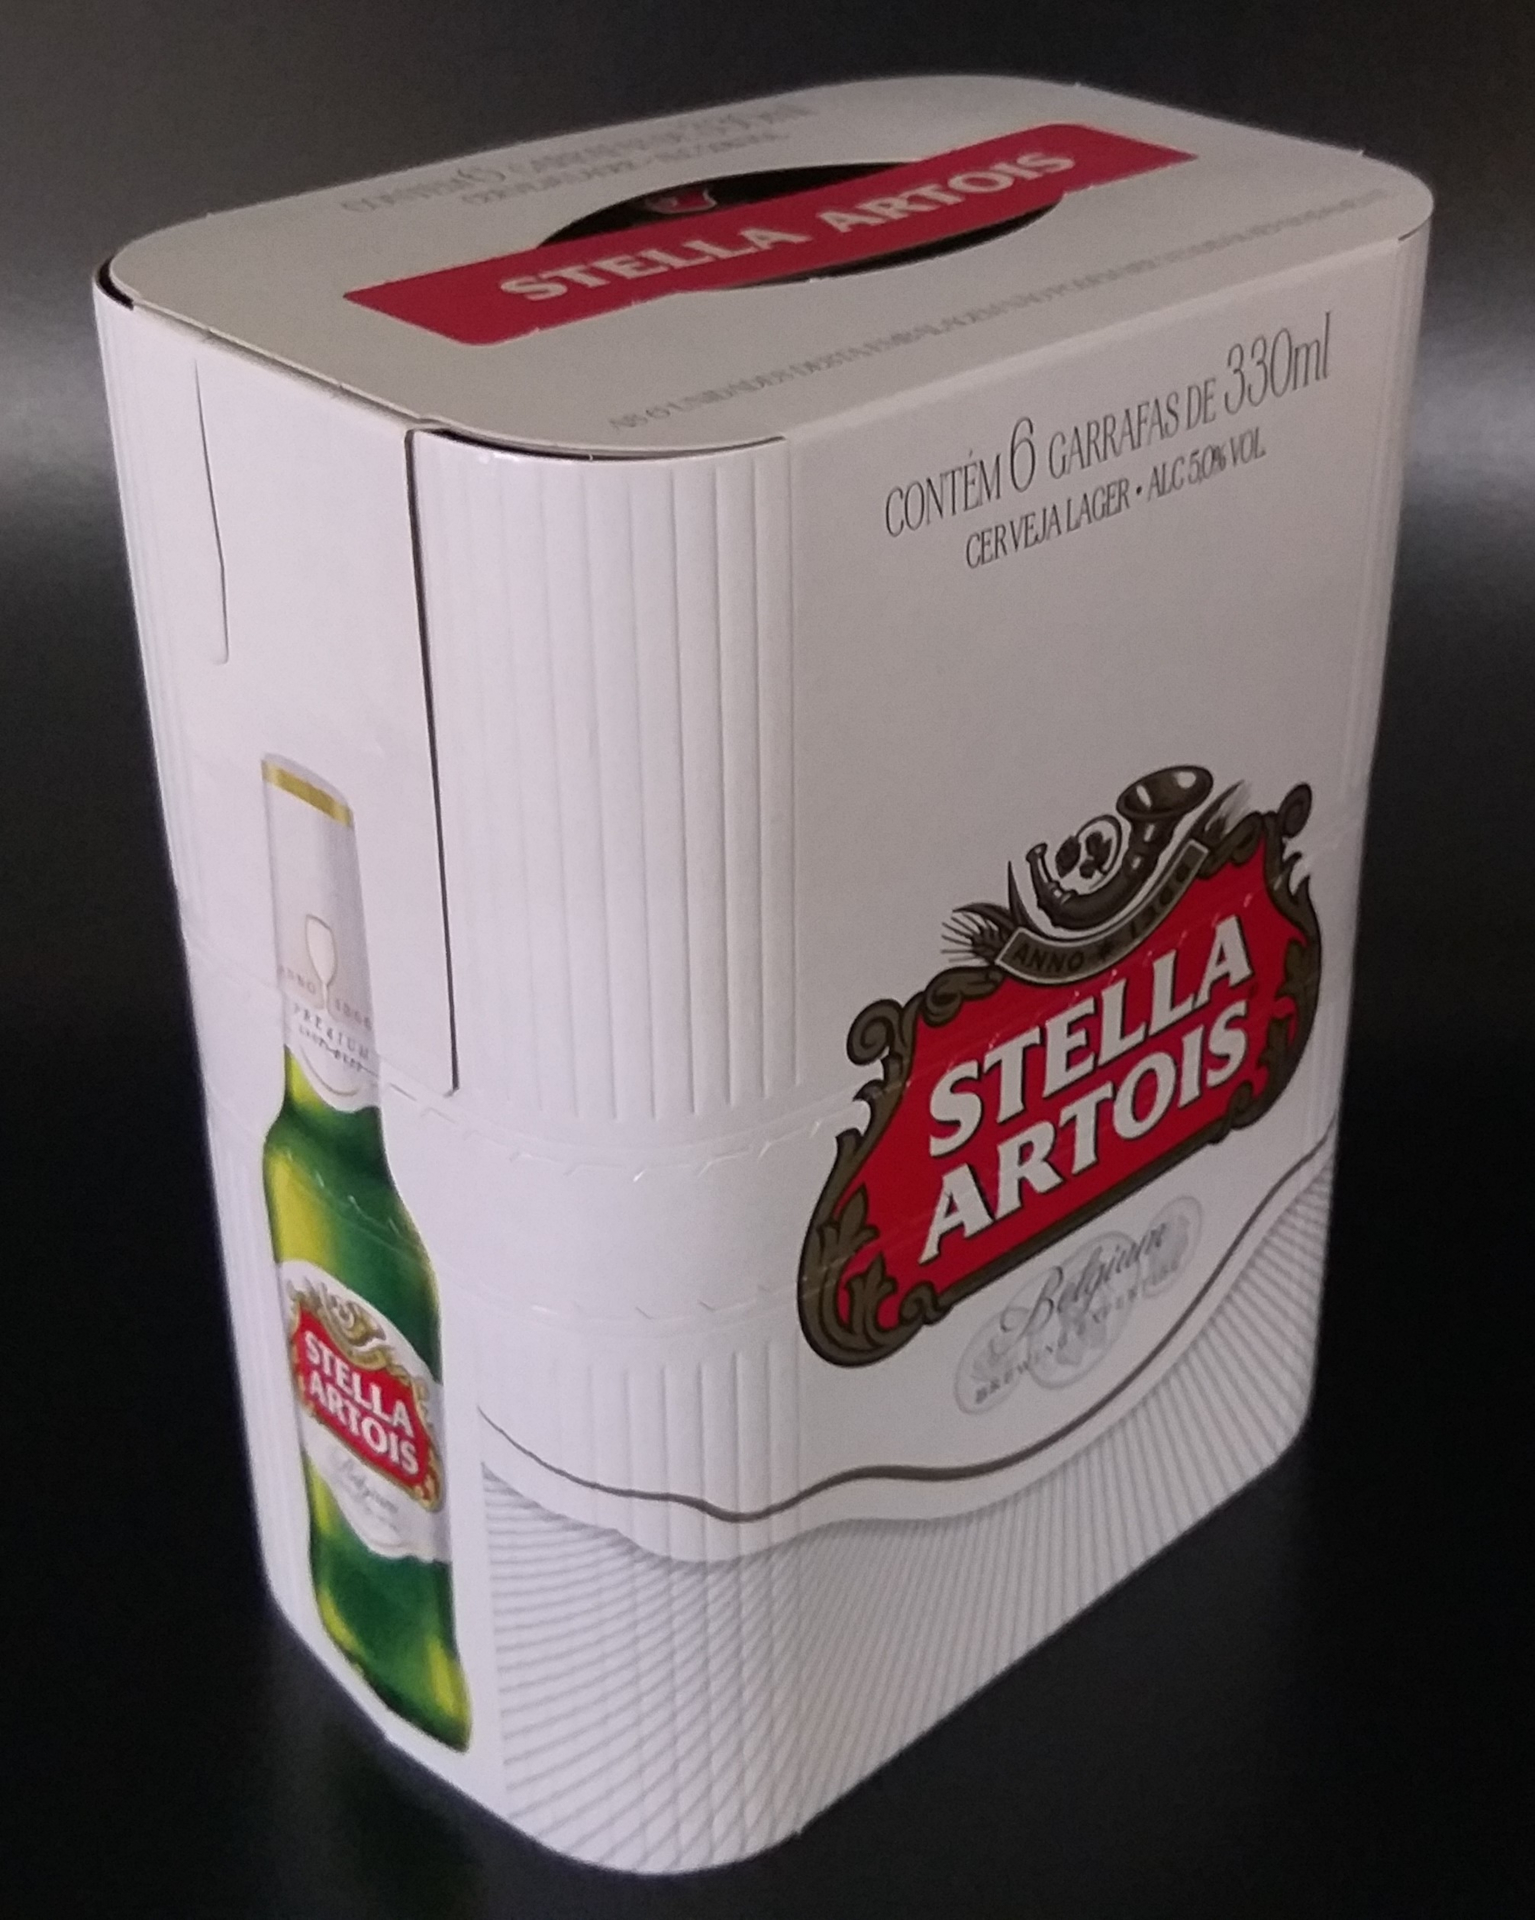 <span style = 'font-size:120%; font-weight: bold;'>Stella Artois Gift Pack</span><br>Forma exclusiva para embalagens de cerveja com cantos arredondados que envolvem as curvas das garrafas e valorizam o req...